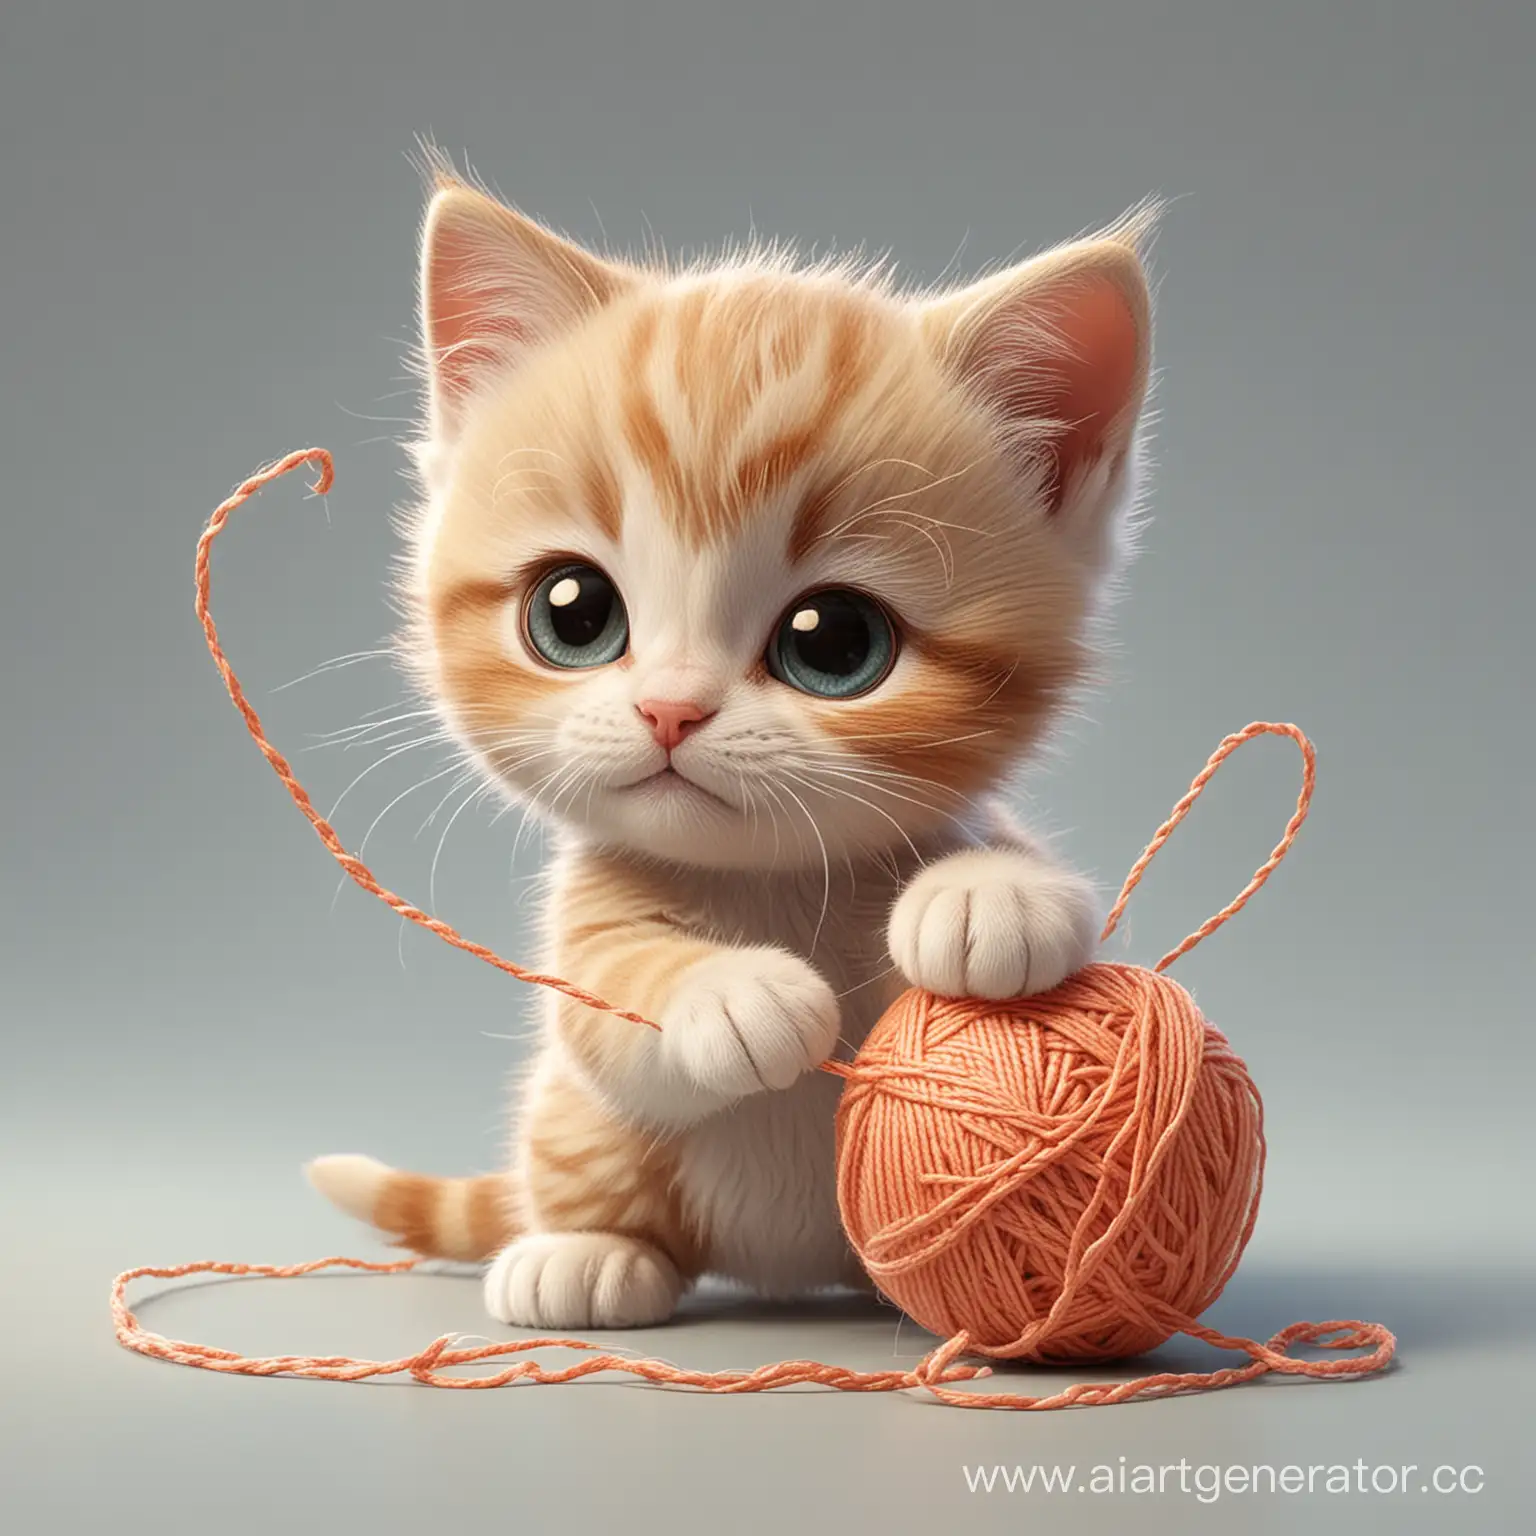 Playful-Cartoon-Kitten-with-Yarn-Ball